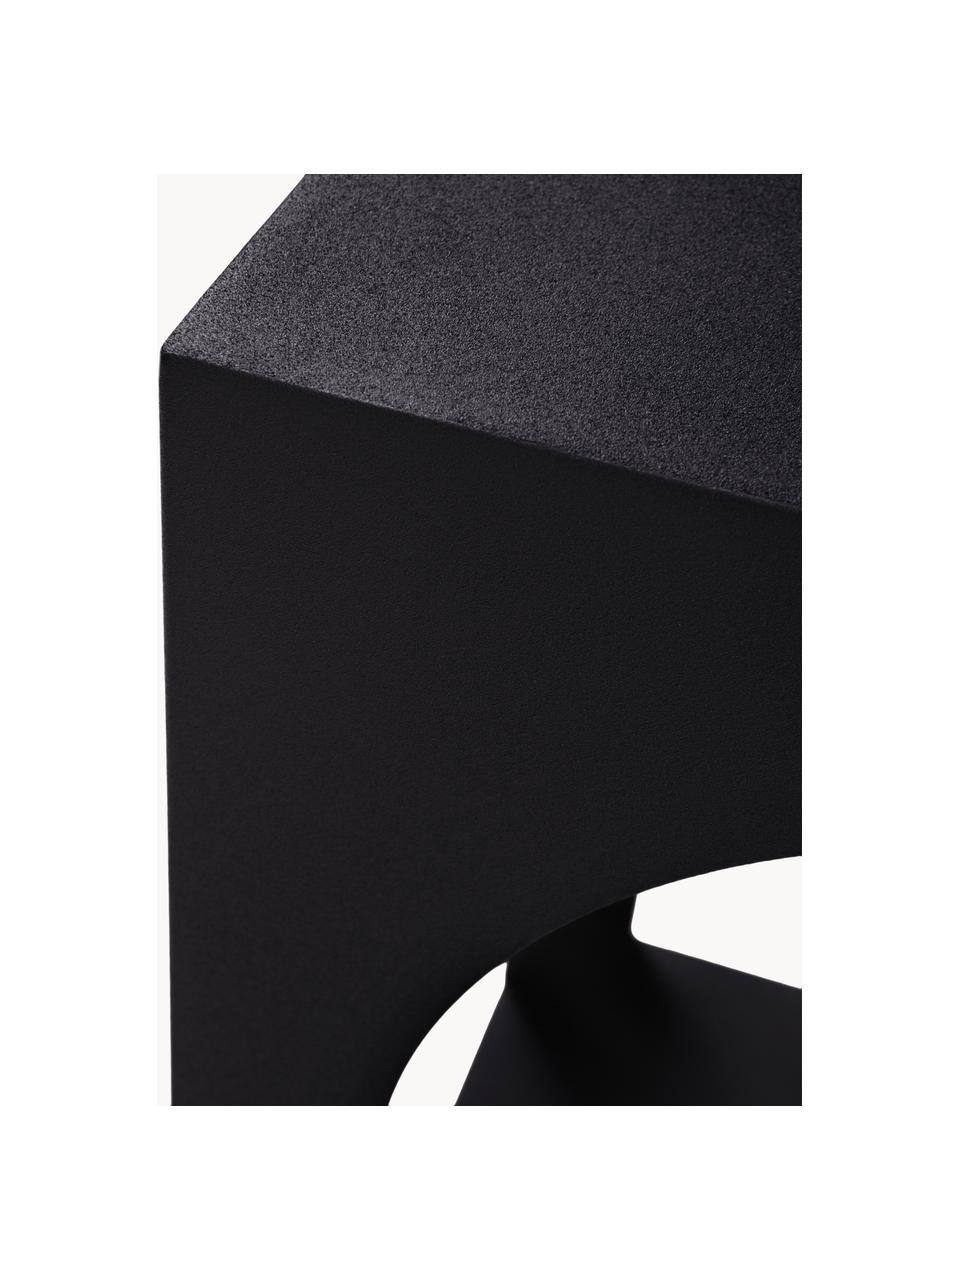 Stolik pomocniczy Vesta, Płyta pilśniowa średniej gęstości (MDF) z fornirem z drewna jesionowego, Drewno naturalne lakierowane na czarno, S 40 x W 59 cm